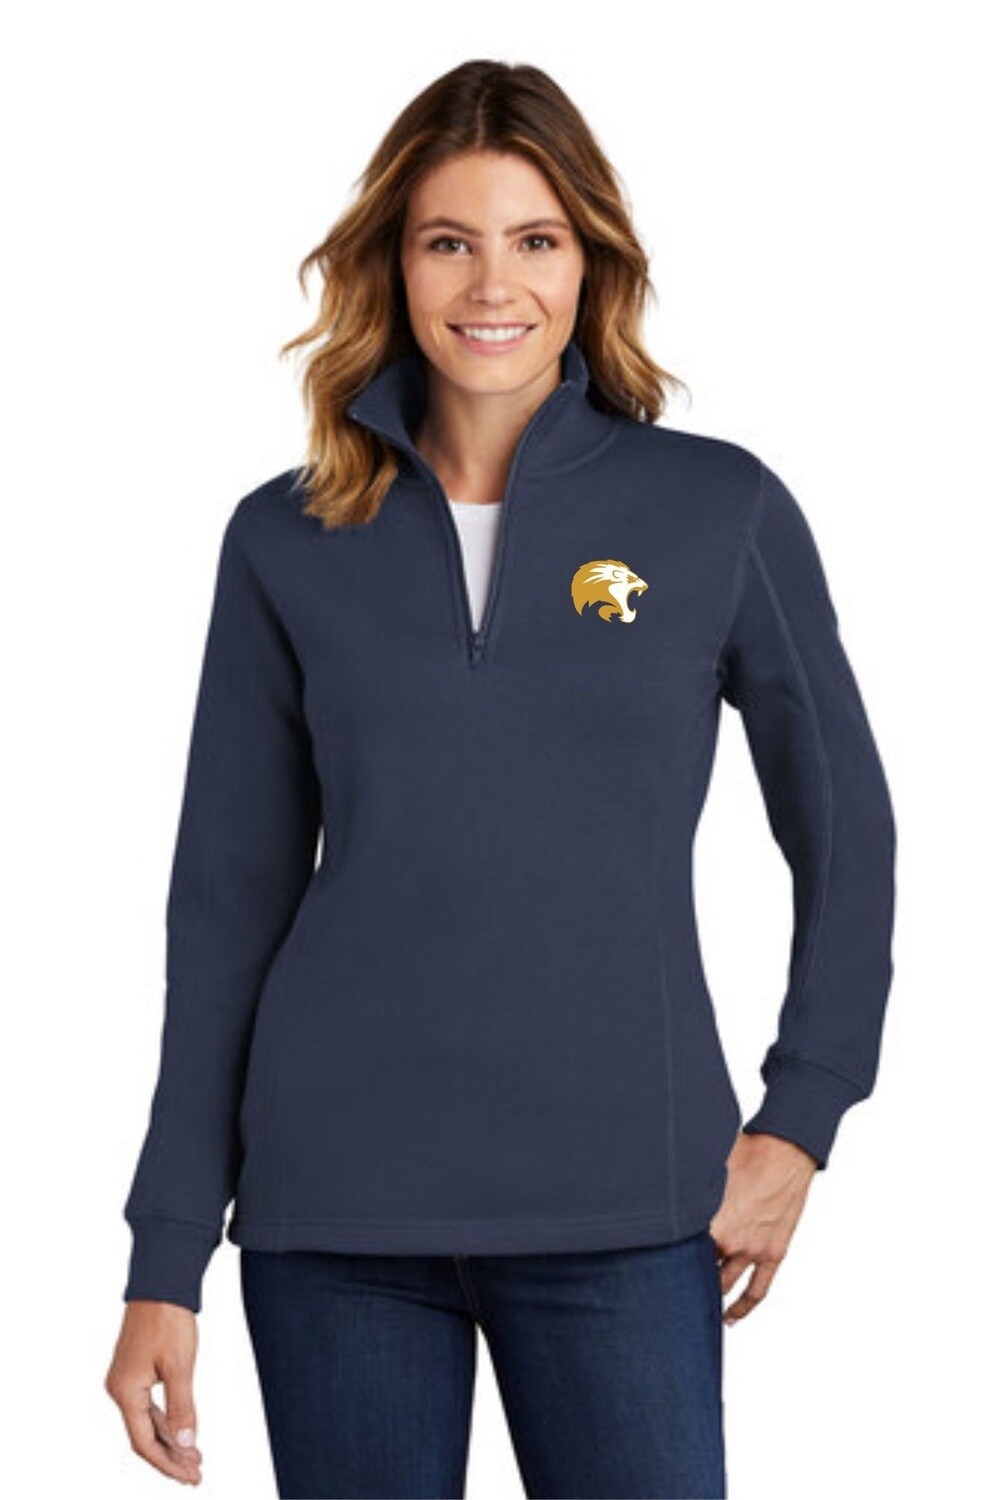 St. Mark Ladies 1/4 Zip Sweatshirt, Colour: True Navy, Size: XSmall - LST253